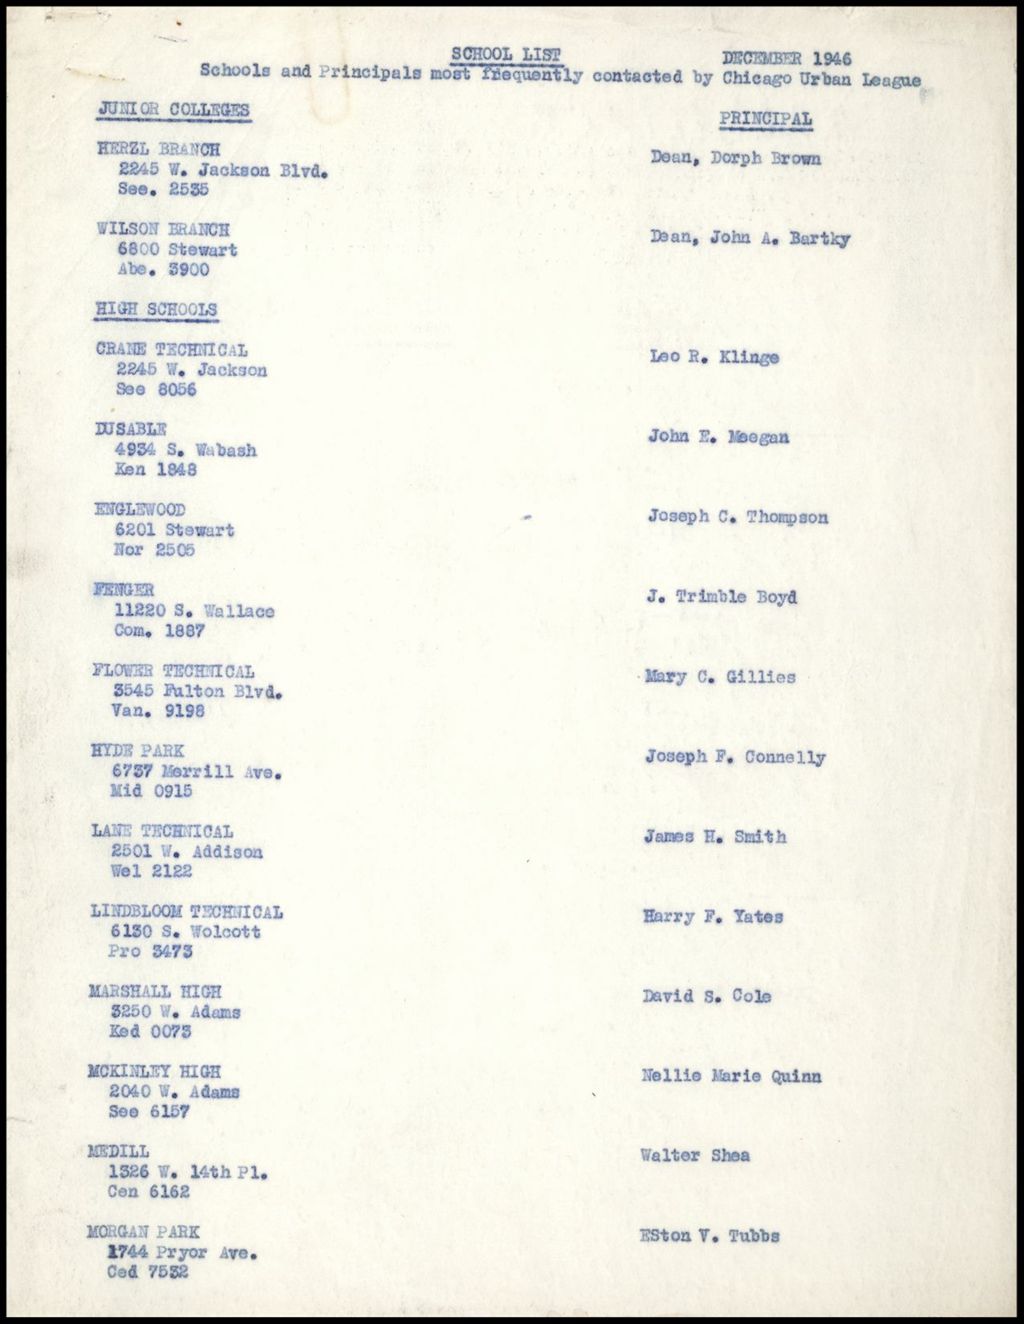 Miniature of Schools - Lists of Schools and Principals, 1946-1954 (Folder II-2275)